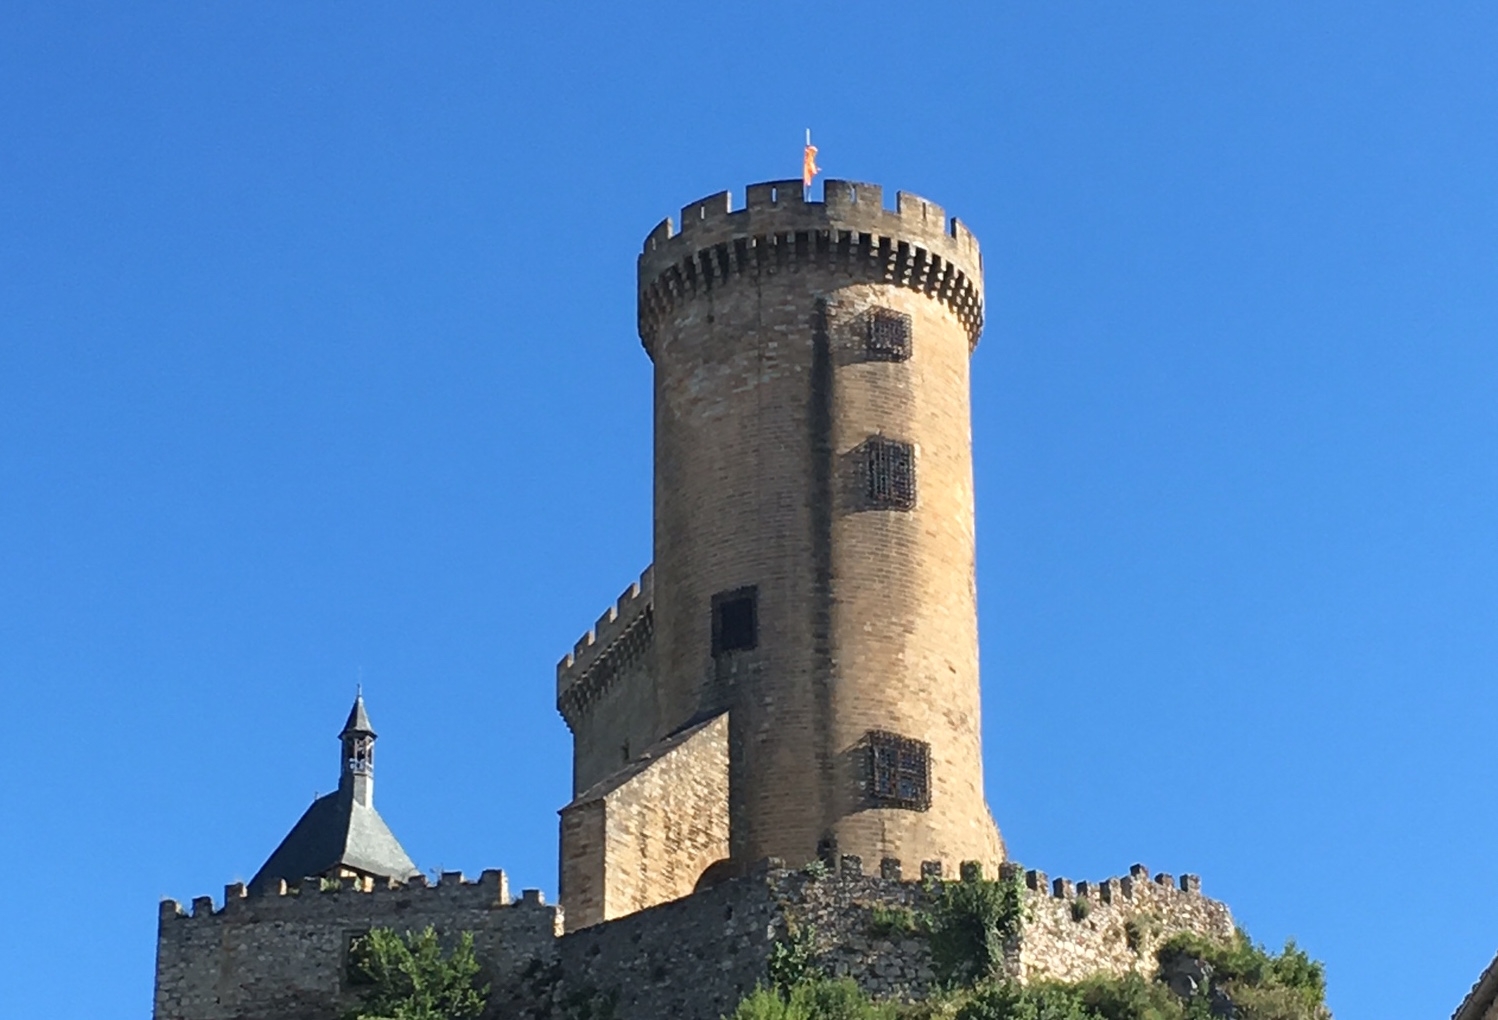 Imágenes del punto de interés Foix, ciudad medieval